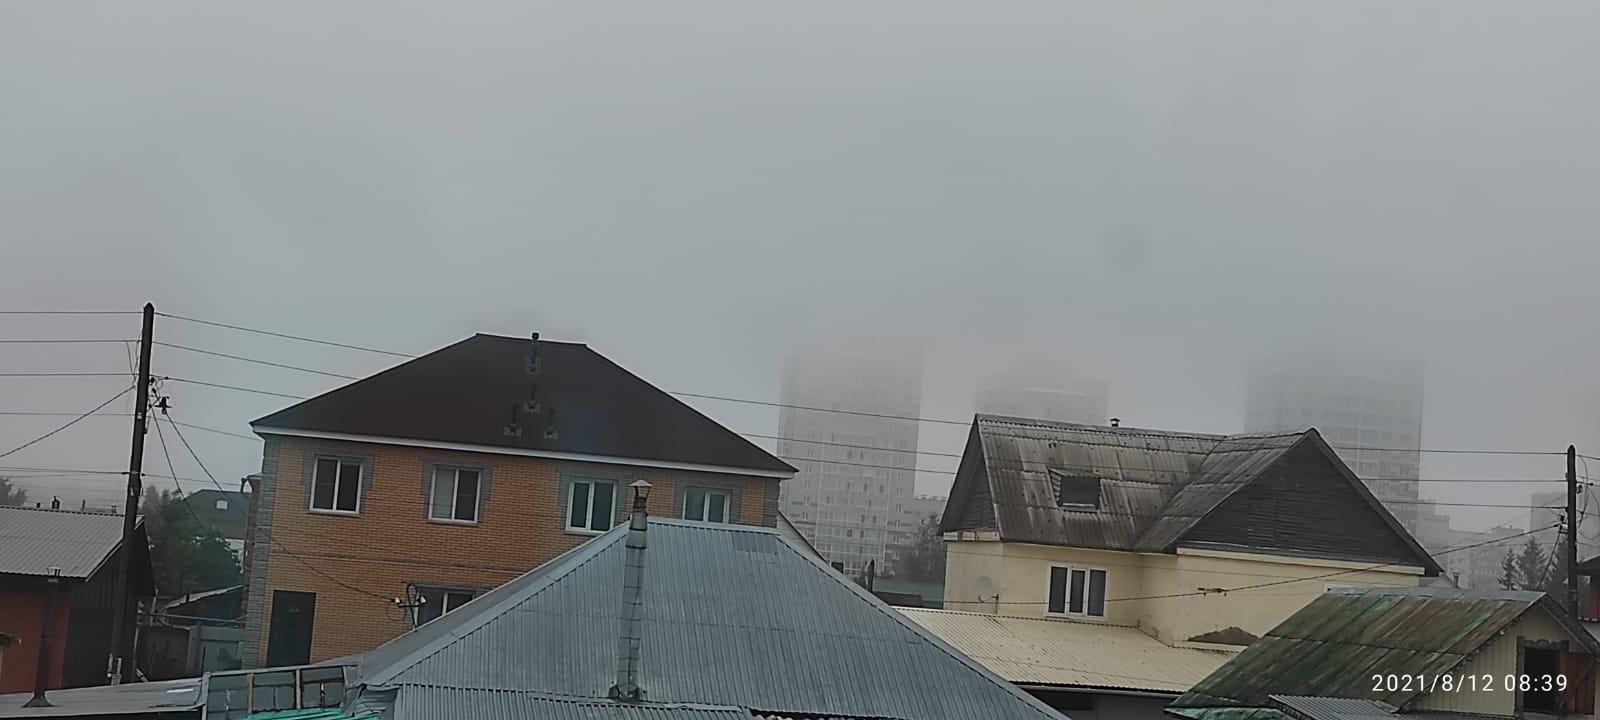 Фото «Выглядит жутковато»: новосибирцы делятся в соцсетях мистическими фото утреннего тумана 6